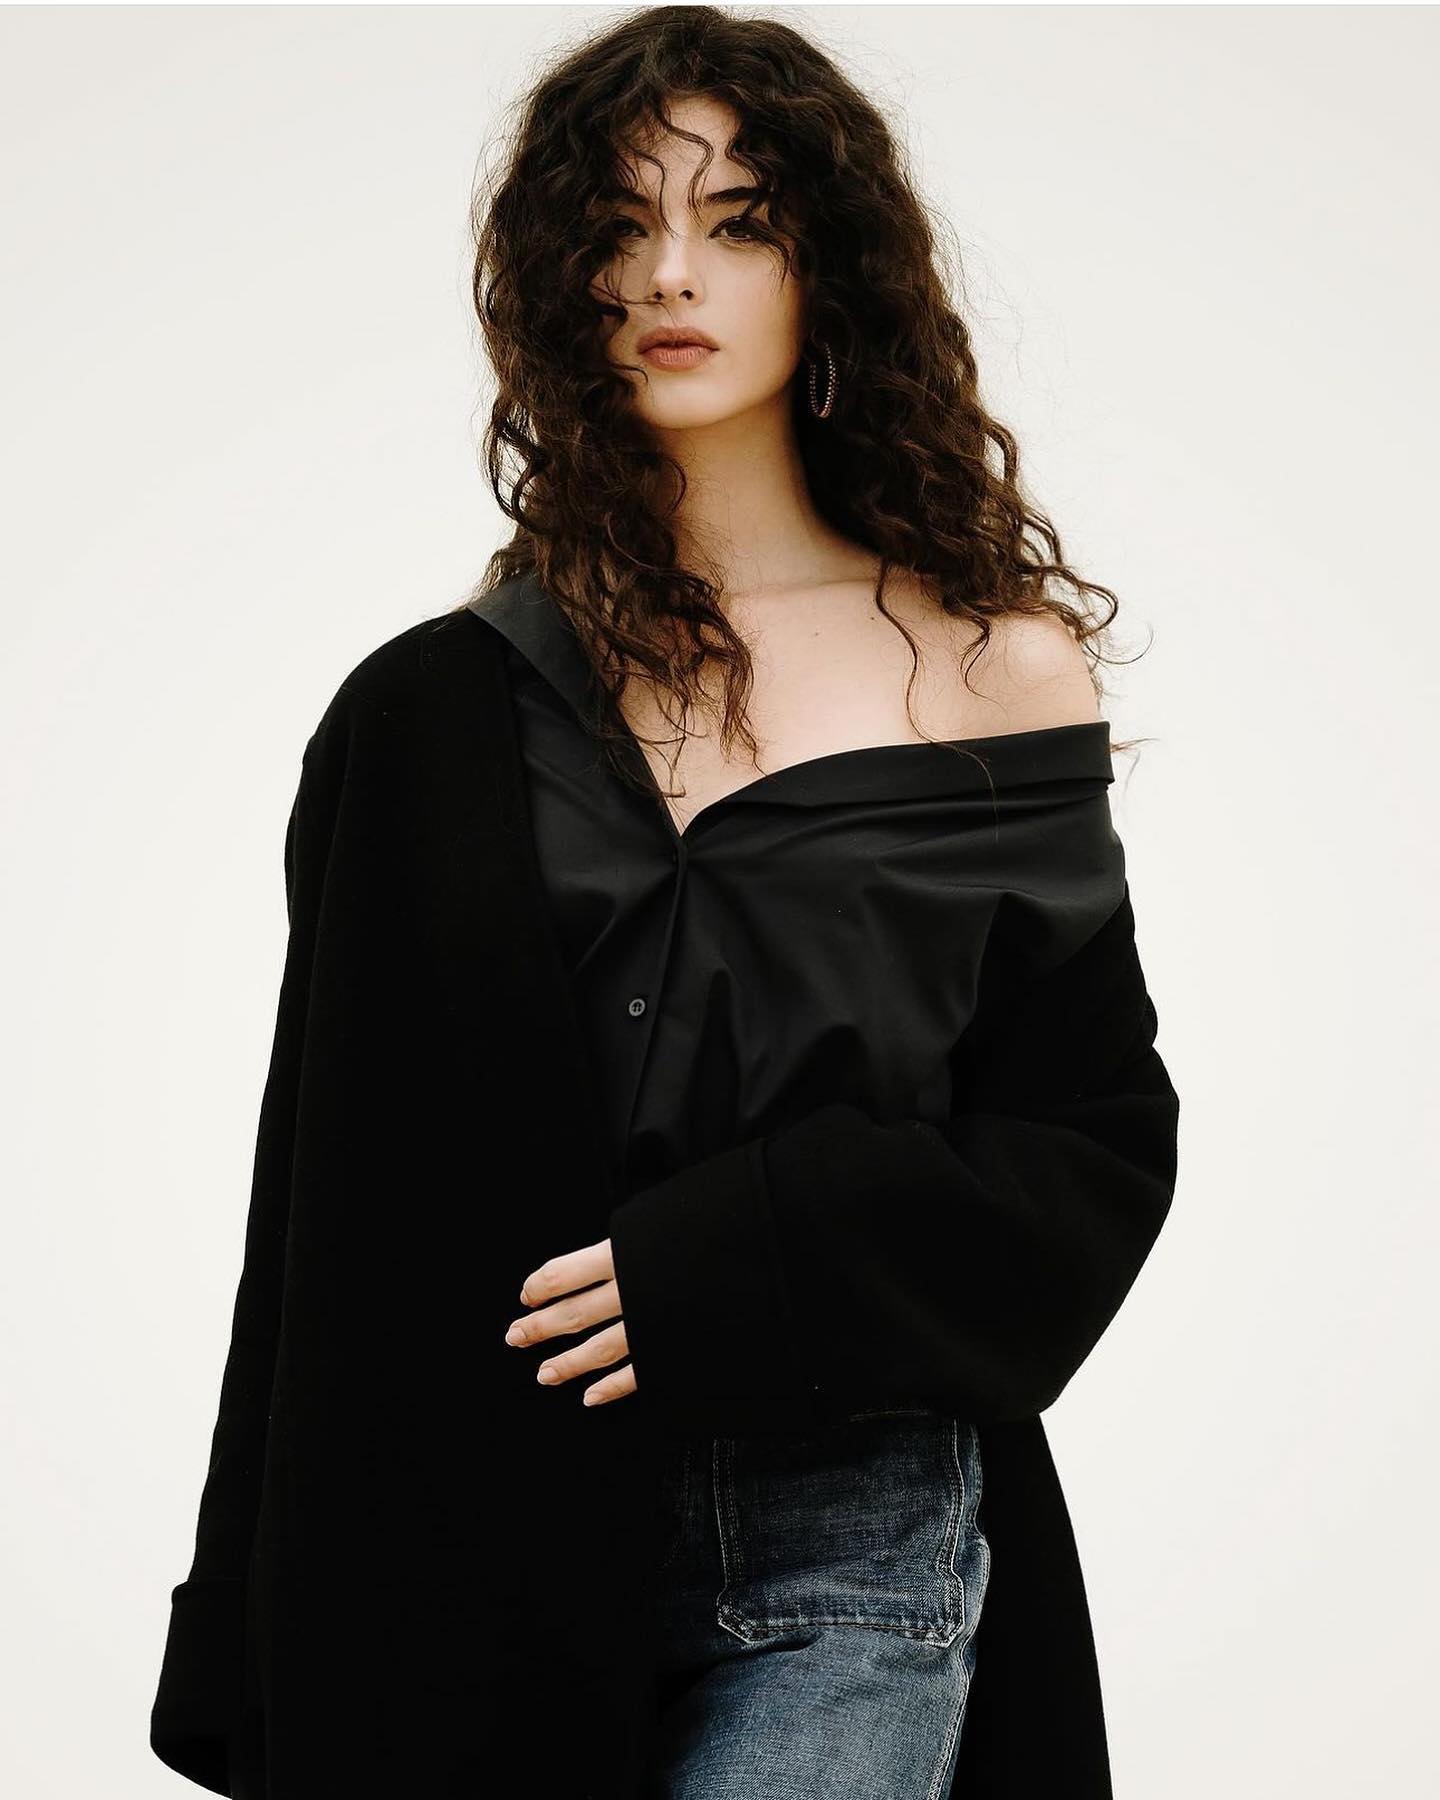 Η Deva Cassel είναι η νέα πρέσβειρα μόδας και ομορφιάς του Dior